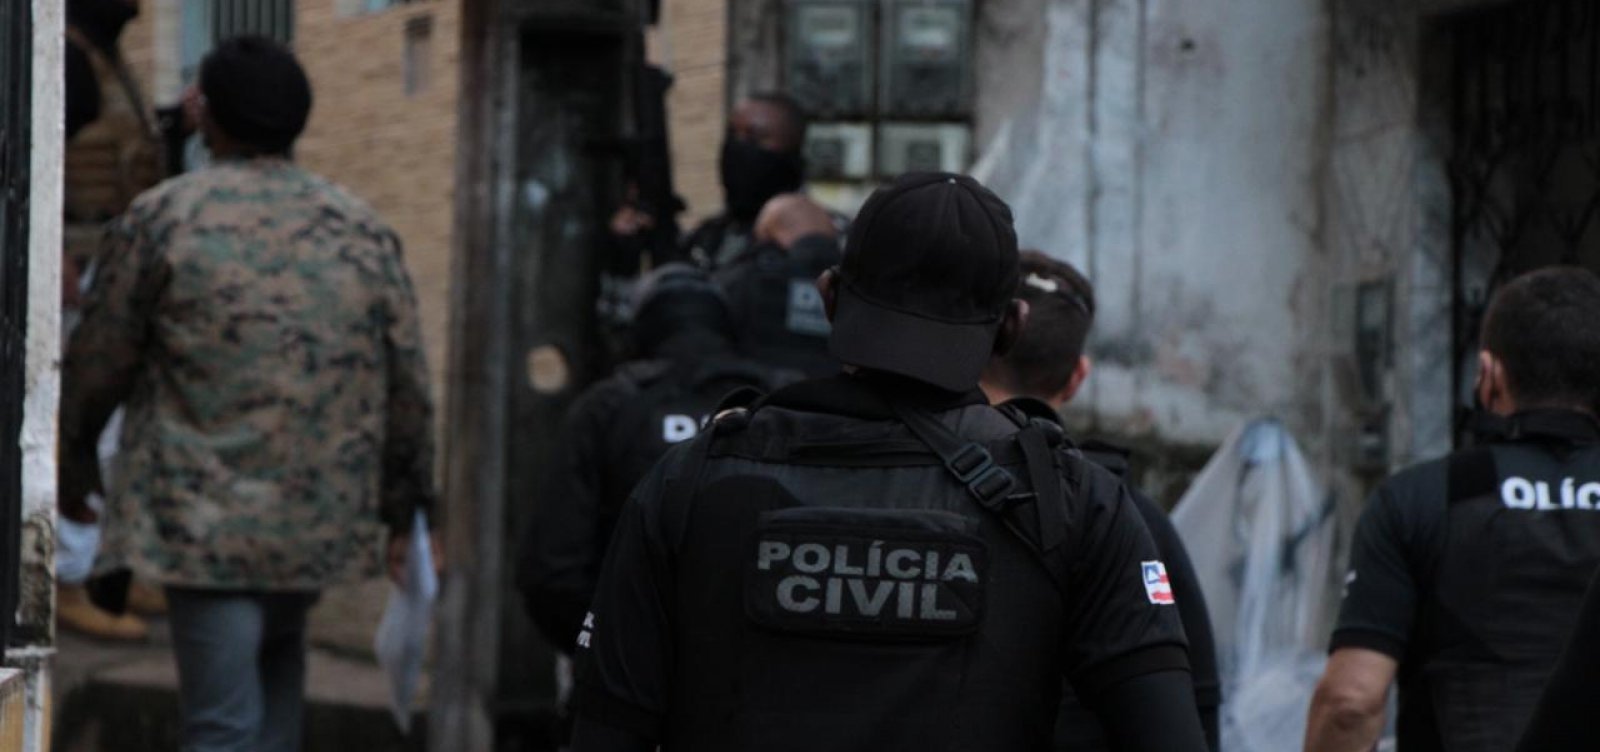 Polícia Civil realiza mega operação e prende três pessoas no bairro do Arenoso